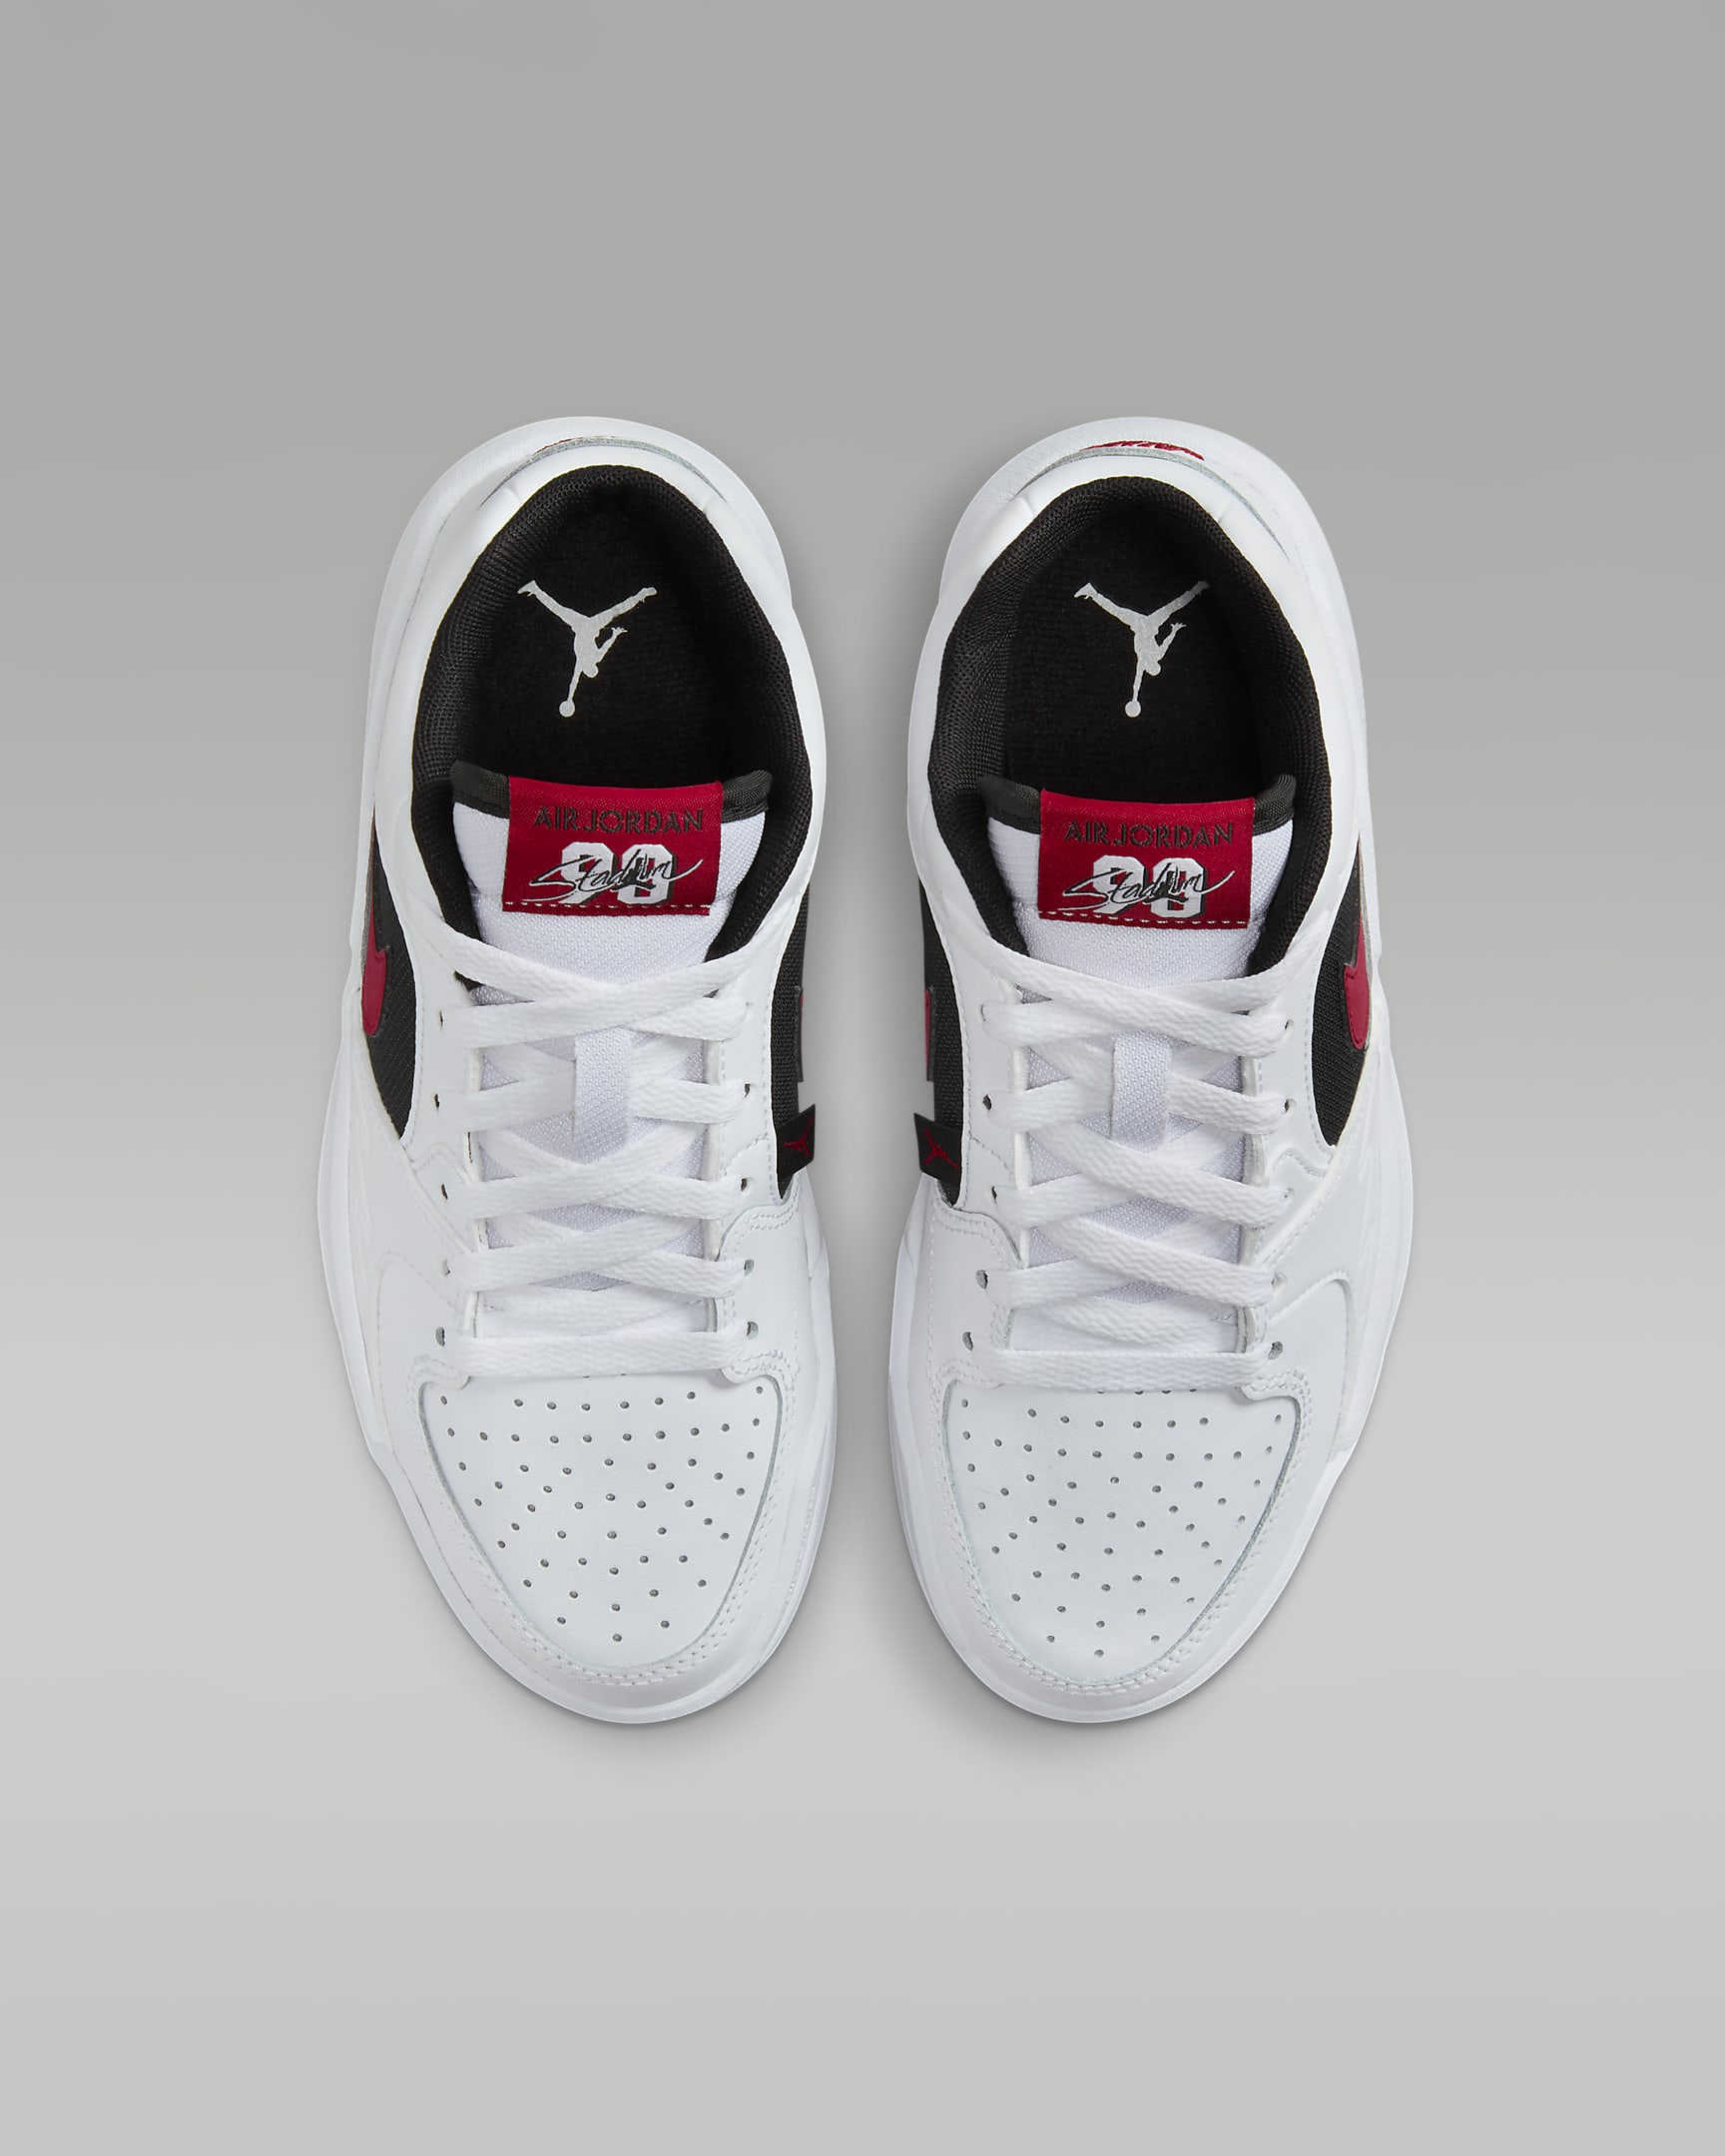 Jordan Stadium 90 Older Kids' Shoes - White/Black/Gym Red